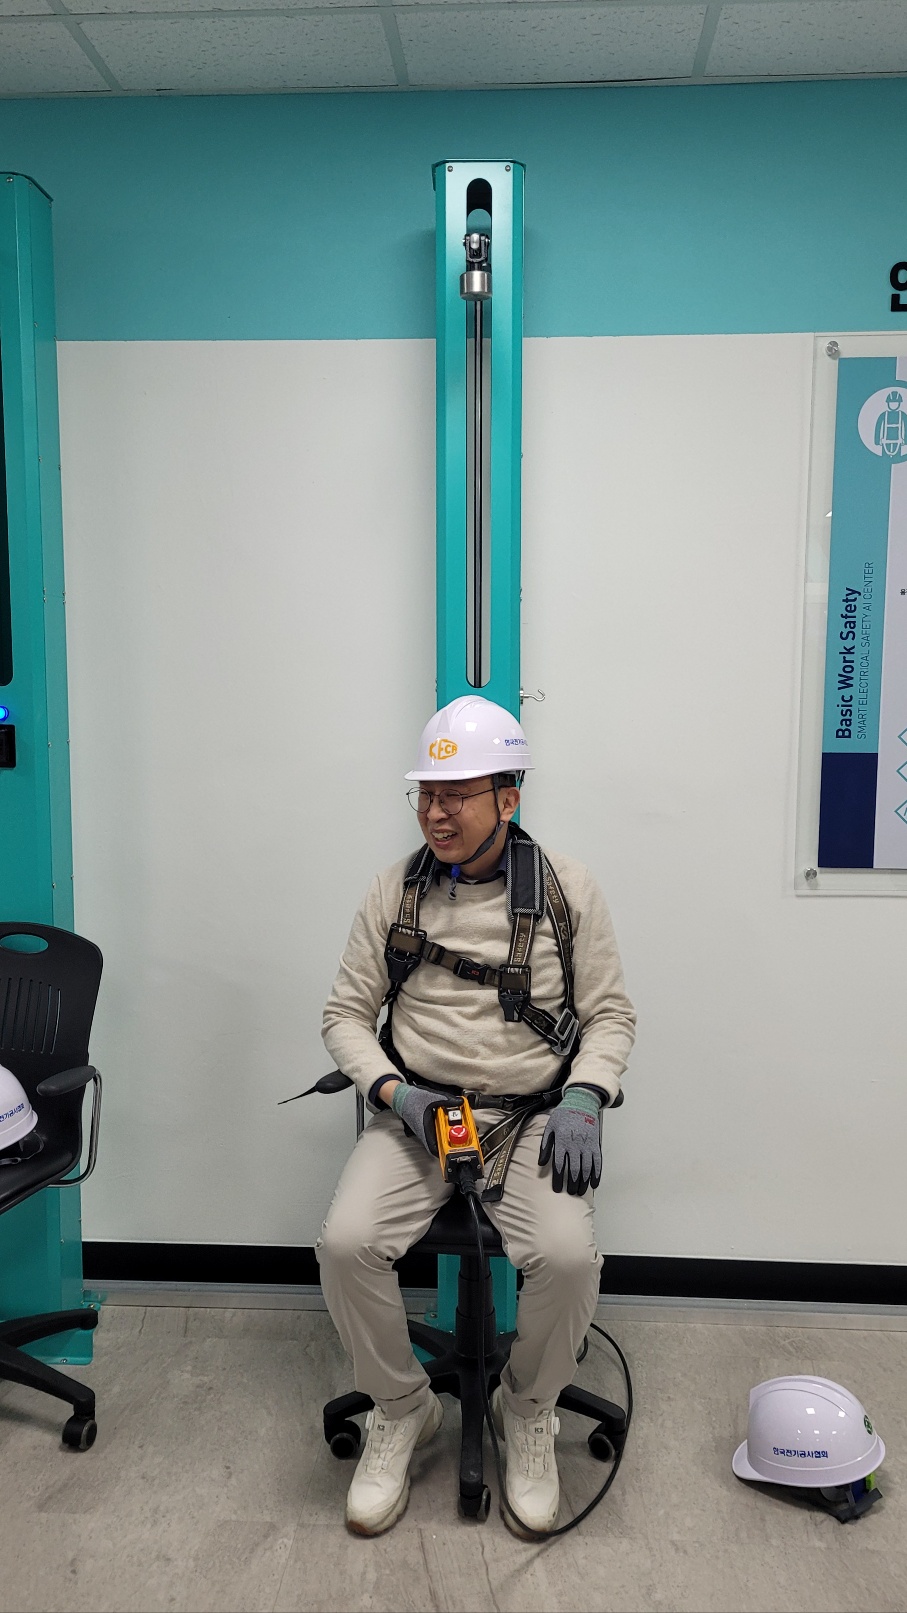 한국전기공사협회 스마트 전기안전 인공지능(AI)센터 내에서 박일순 전기공사인재개발원 안전교육팀장이 안전모 충격 체험 시범을 보이기 위해 앉아 있다.